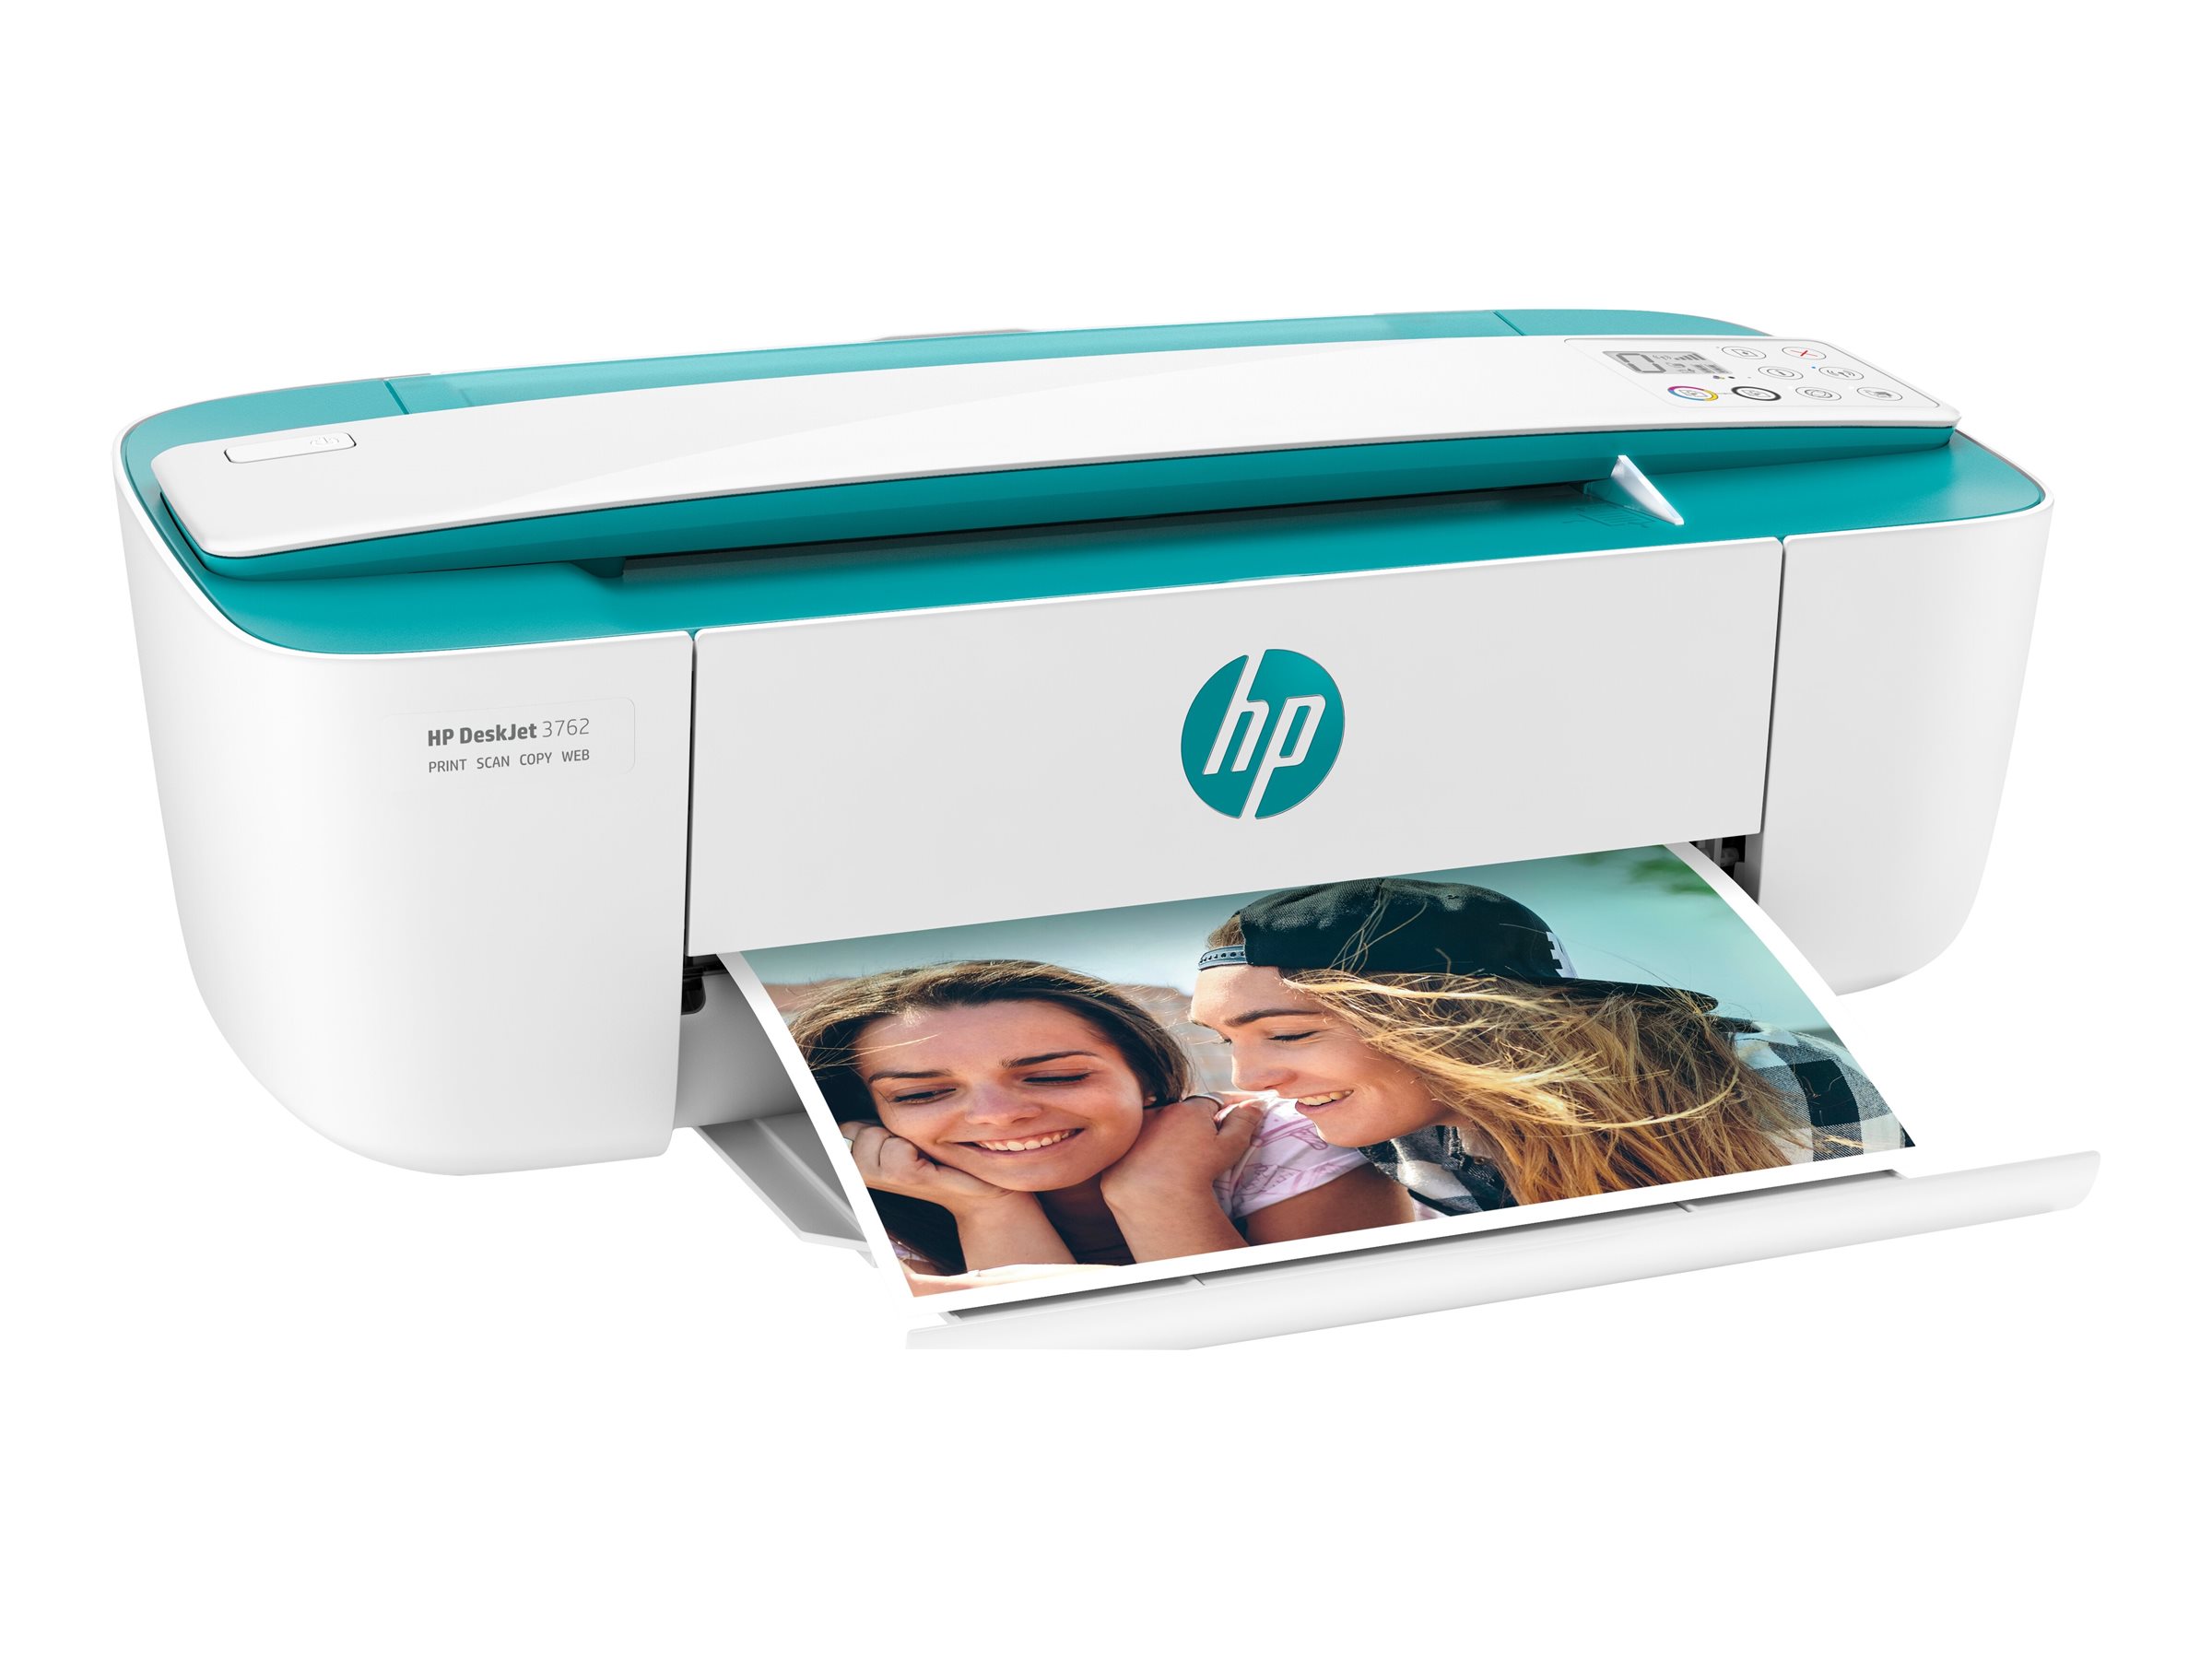 HP DeskJet 3762 All-in-One A4 Color USB 2.0 Wi-Fi Print Copy Scan Inkjet 15ppm [Towar z magazynu zewnętrznego (na specjalne zamówienie). Towar nie podlega zwrotowi. Czas oczekiwania do 5 dni roboczych.]